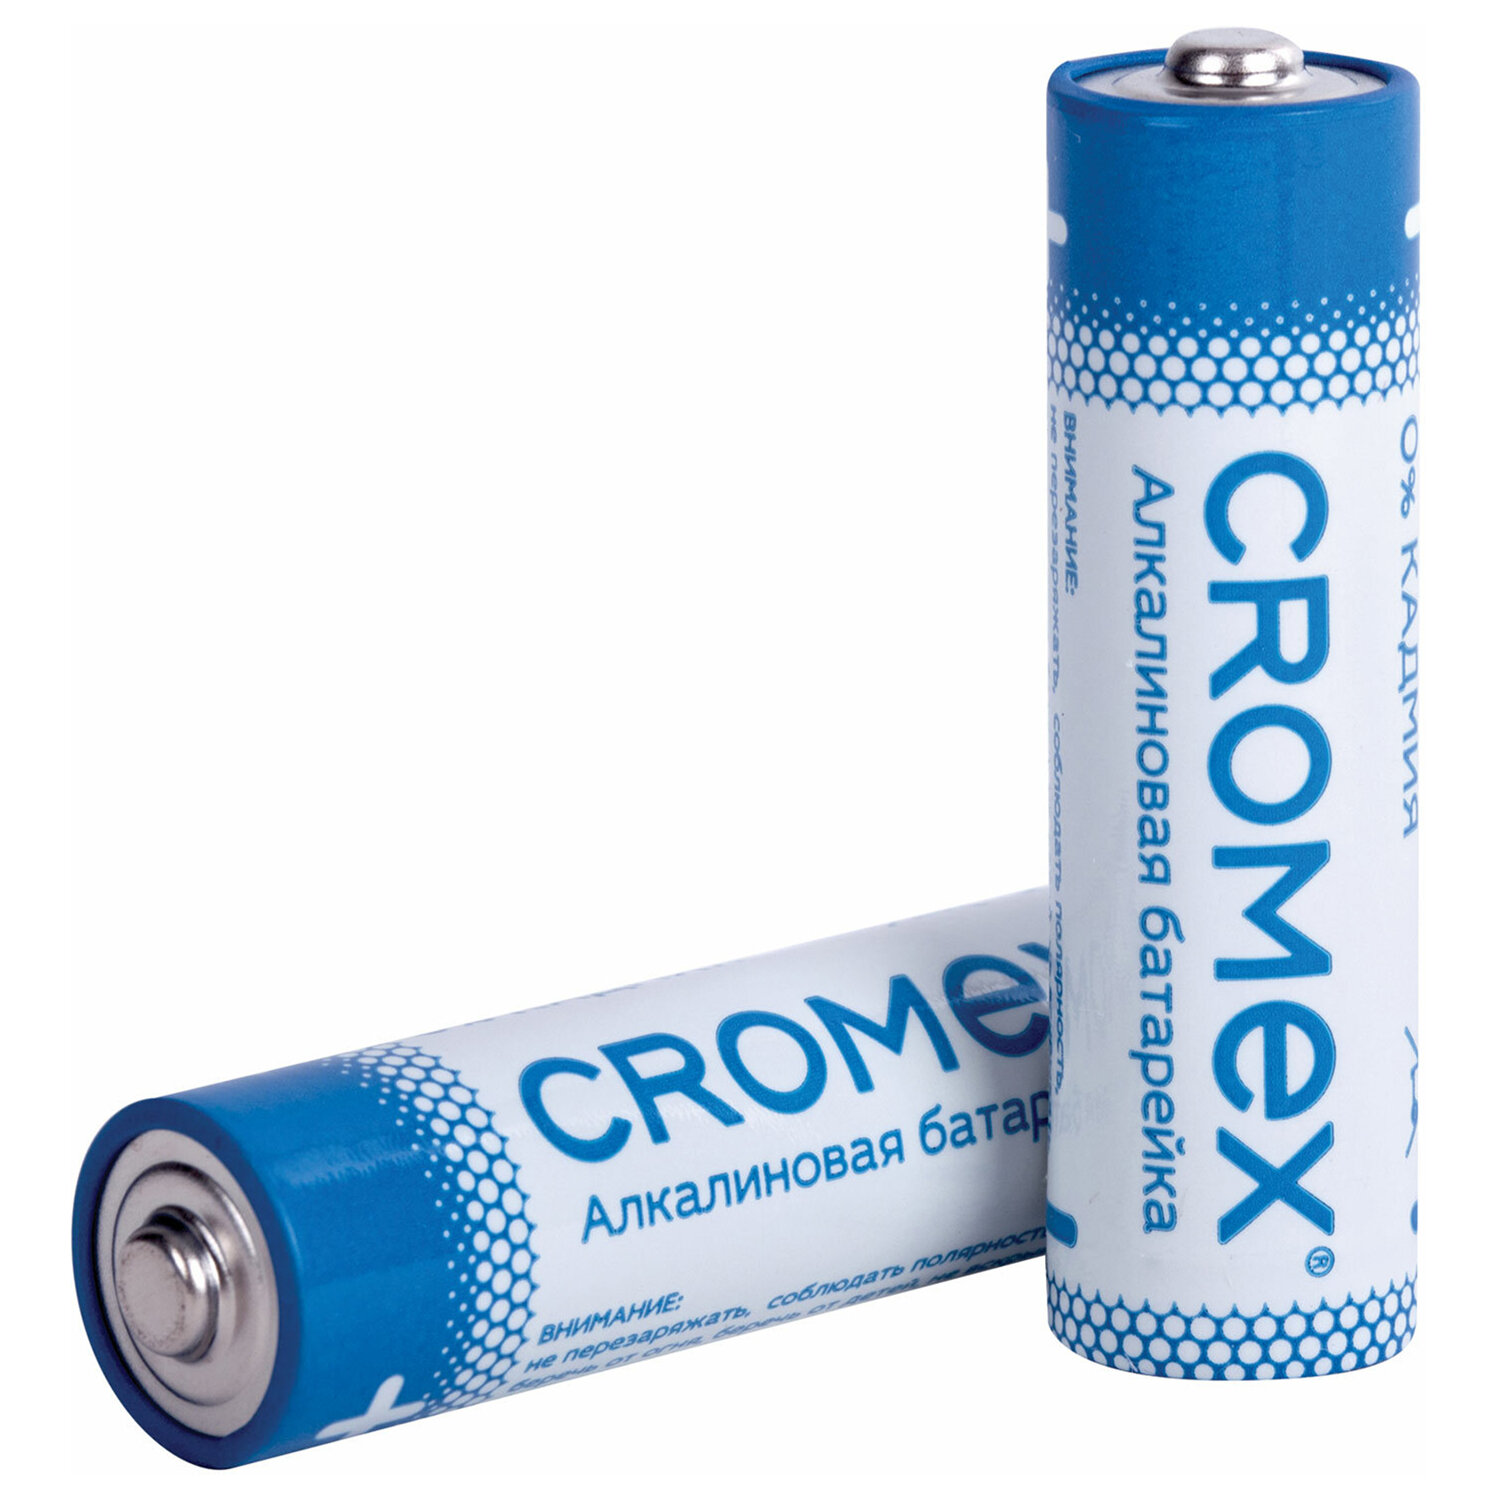 Батарейки алкалиновые CROMEX пальчиковые AA набор 11 штук для весов часов фонарика - фото 2